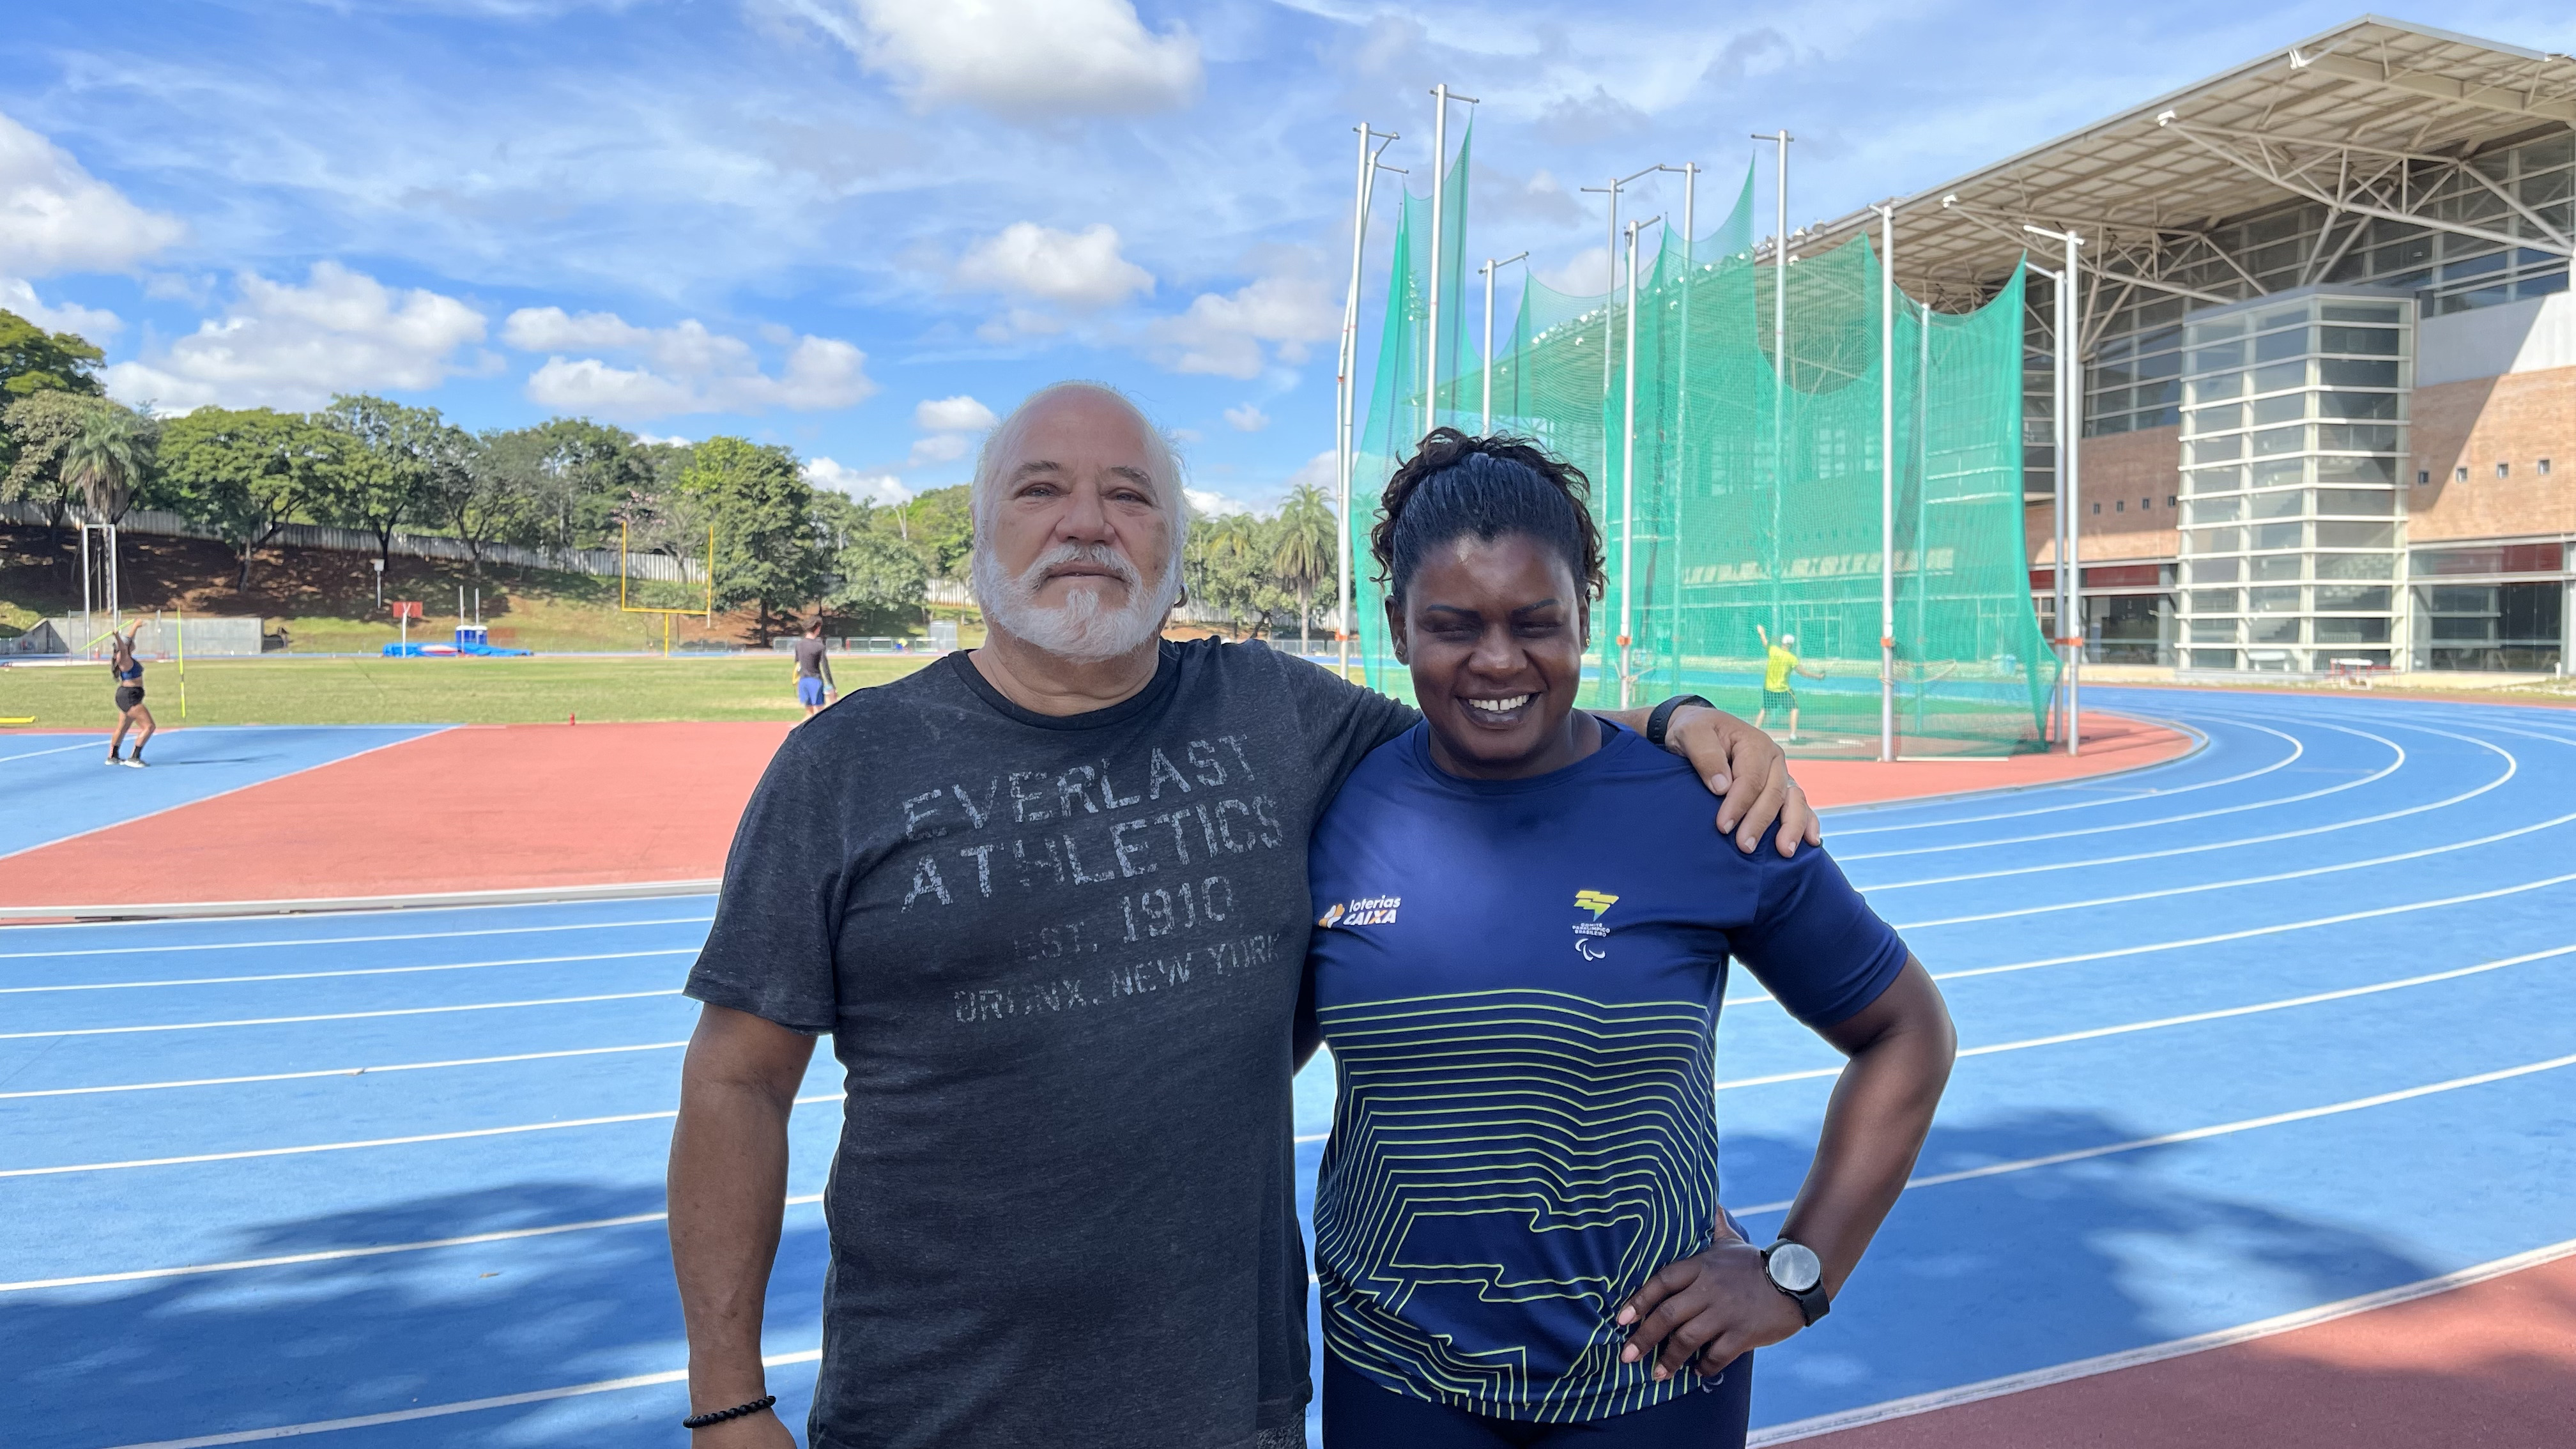 A imagem é composta por um céu azul e o centro de treinamento da Universidade Federal de Minas Gerais. No meio da imagem, um homem branco de cabelos grisalhos abraçada com uma mulher negra que é atleta paralímpica. 